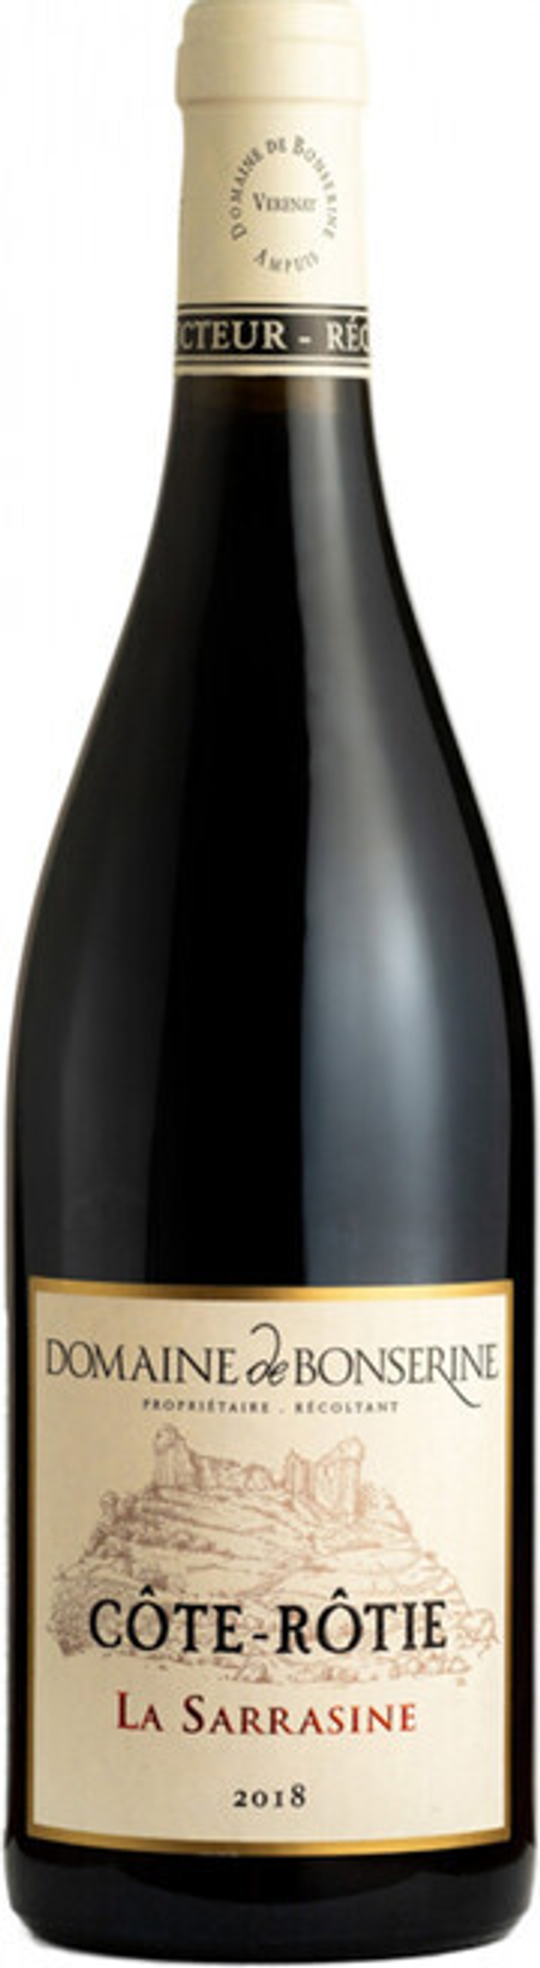 Вино Domaine de Bonserine Cote-Rotie La Sarrasine АОC, 0,75 л.